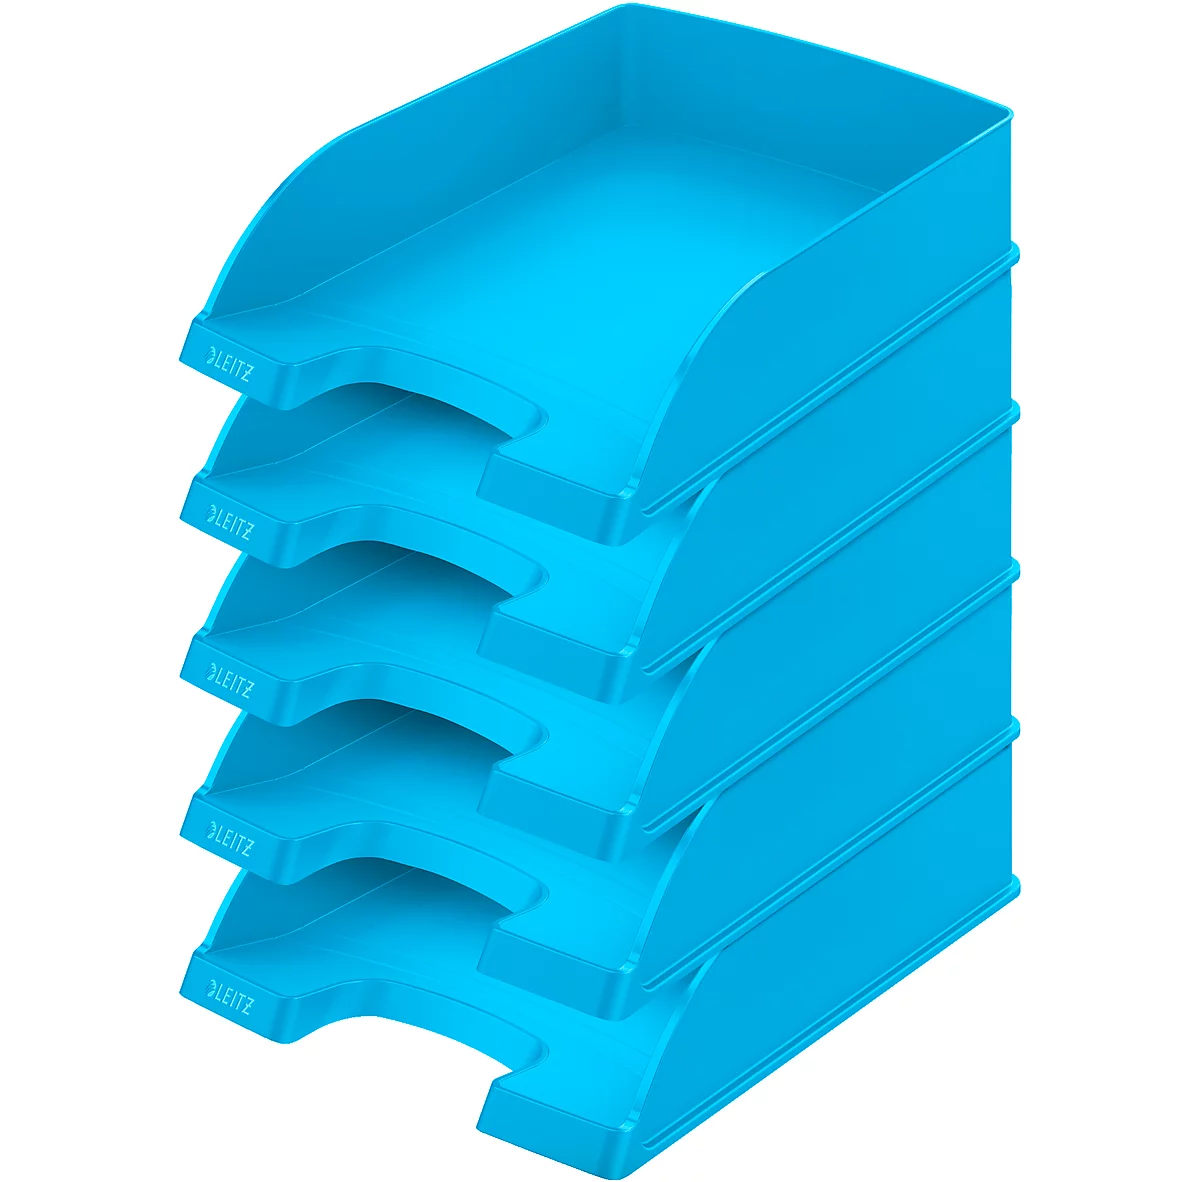 Bandeja para documentos LEITZ® estándar 5227, plástico, 5 unidades, azul claro